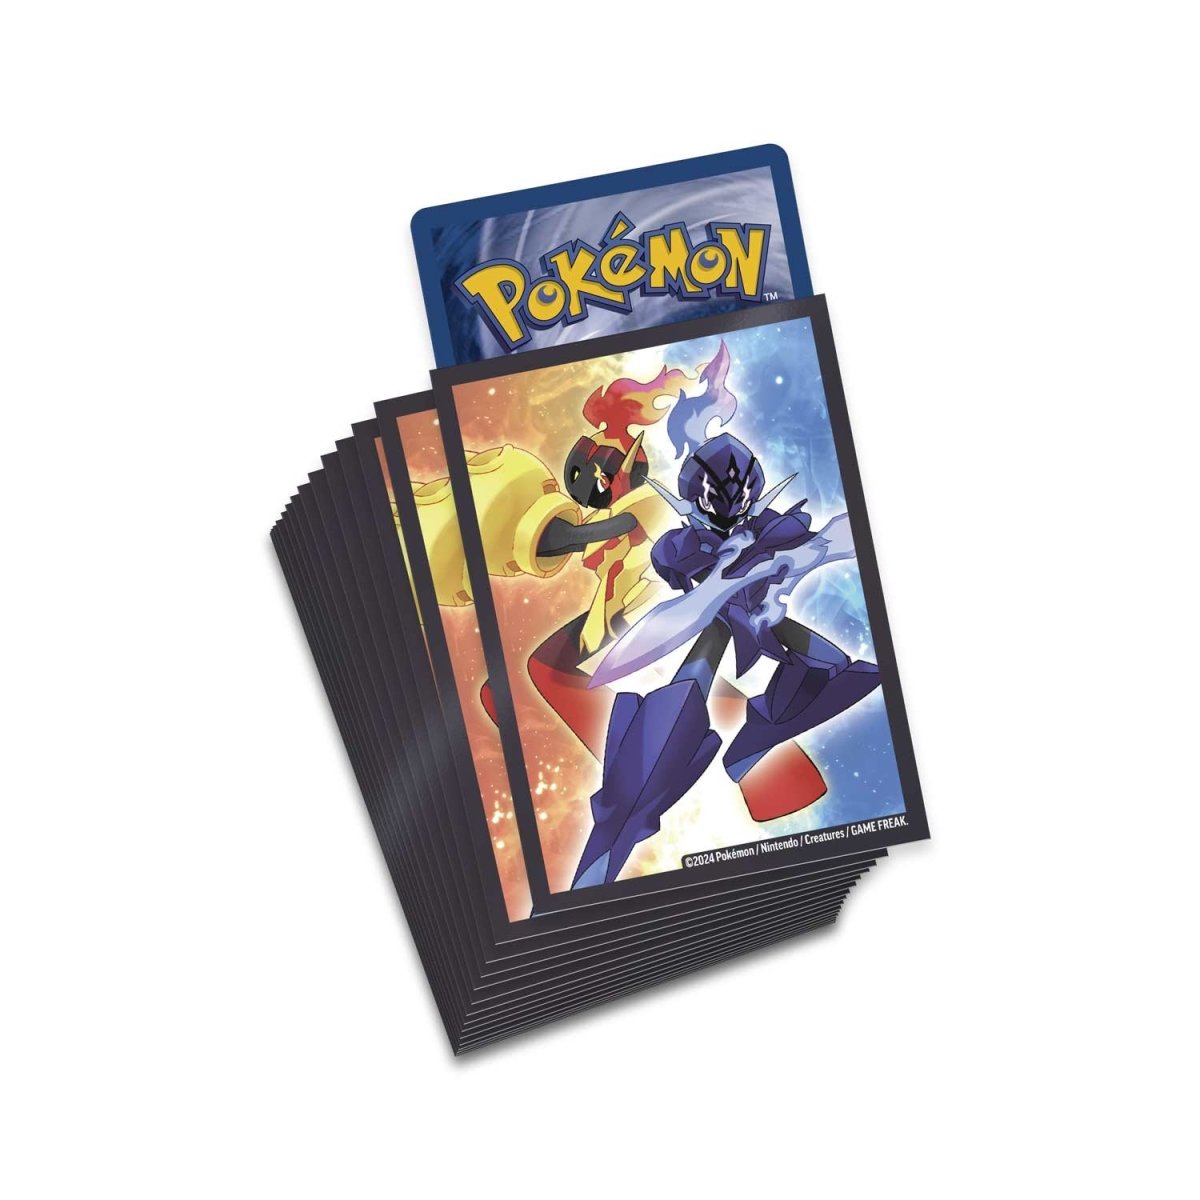 Pokemon TCG Armarouge ex Premium Collection Box